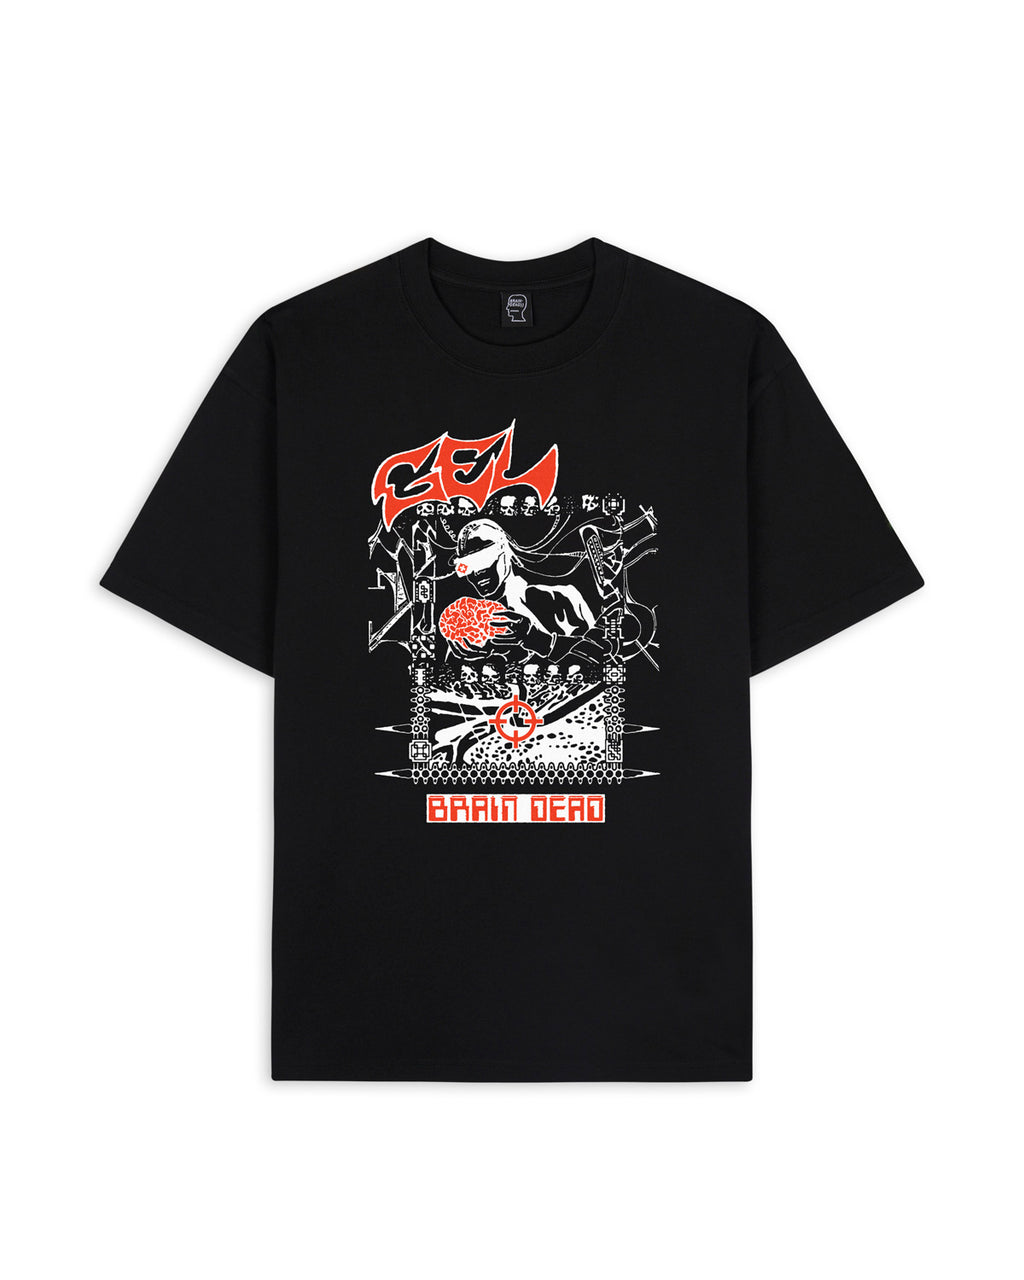 Brain Dead x Gel Sound & Fury T-shirt - Black 1